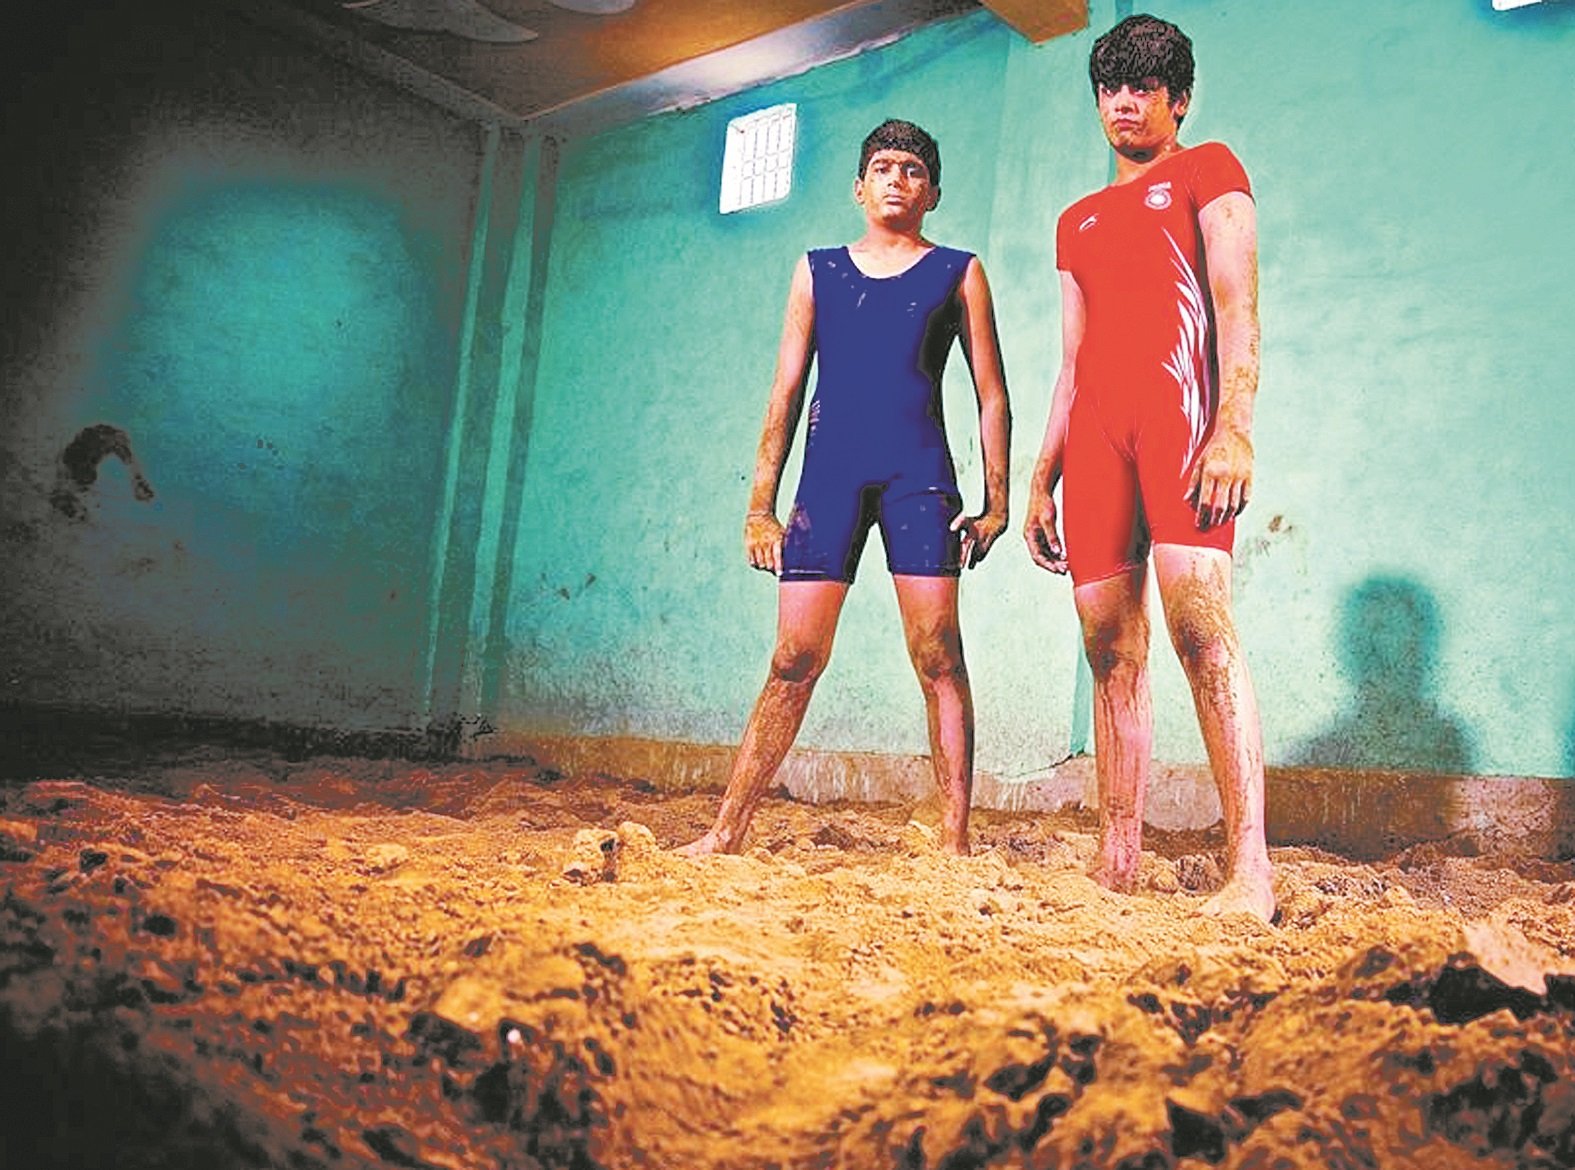 在印度这个女性地位低下的国度里，女性从事摔跤行业是一件非常“出格”的事情，然而印度哈里亚纳邦的阿拉瓦特姐妹，却勇敢地挑战了这样的“规矩”。